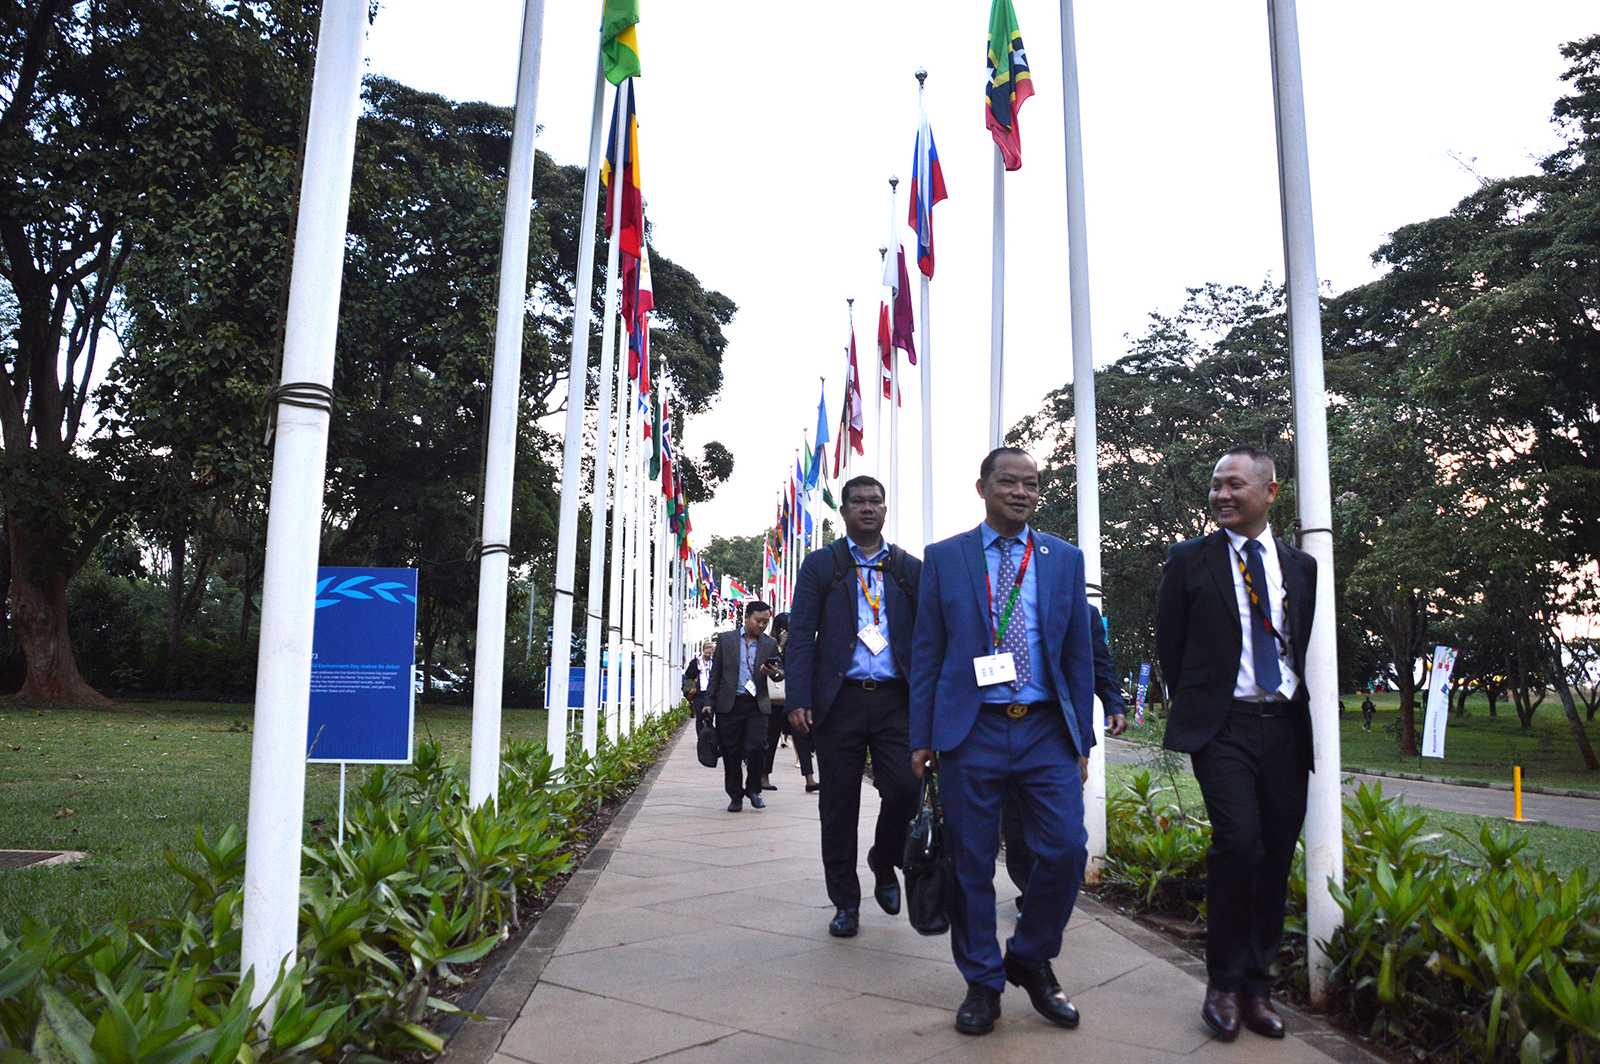 Delegados na conferência UNEA-6 navegam na sede do Programa das Nações Unidas para o Meio Ambiente (PNUMA) em Nairobi, Quênia.  (Foto RNS/Fredrick Nzwili)